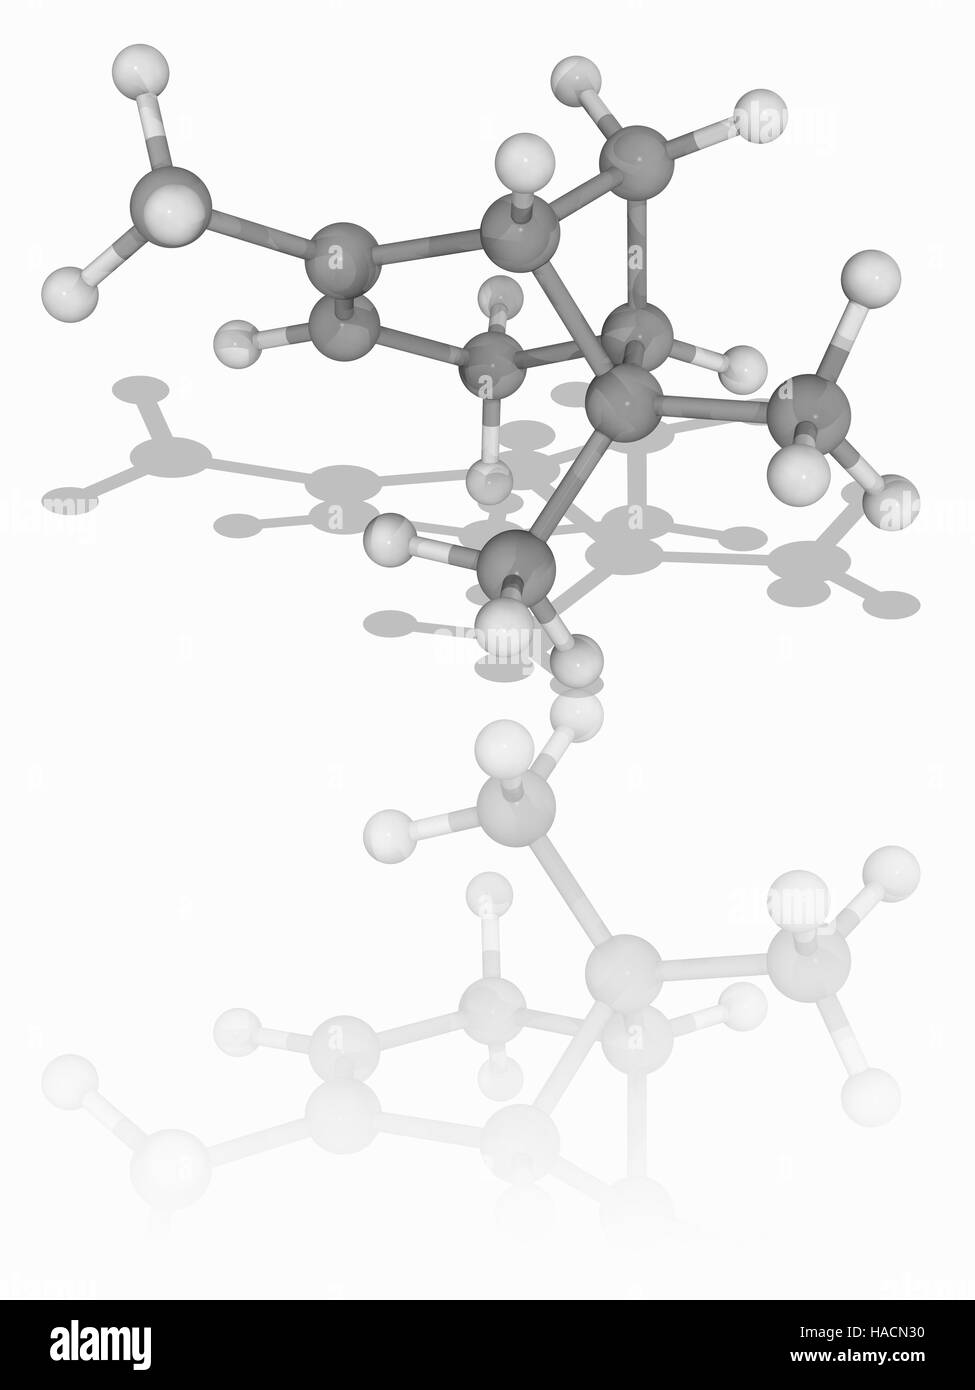 Alpha-Pinen. Molekülmodell der bicyclische Monoterpen zusammengesetzte Alpha-Pinen (C10. H16). Dies wird als ein Kohlenwasserstoff eines Typs bekannt als ein Terpene eingestuft. Man findet in dem Öl (Harz) der Nadelbäume. Atome als Kugeln dargestellt werden und sind farblich gekennzeichnet: Kohlenstoff (grau) und Wasserstoff (weiß). Abbildung. Stockfoto